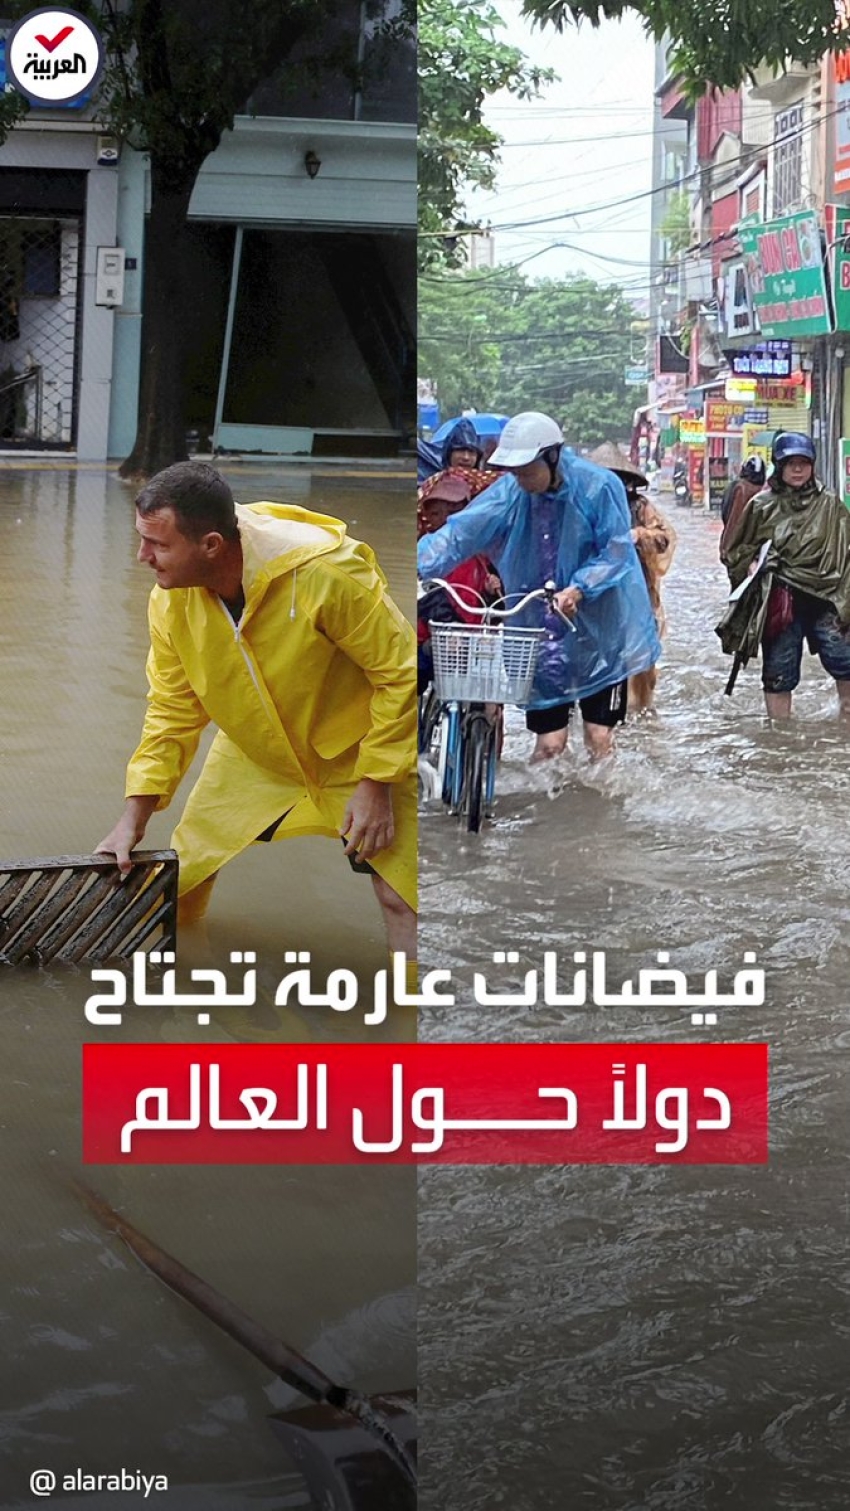 فيضانات عارمة تجتاح تركيا و اليونان وفيتنام مخلفة قتلى وأضراراً هائلة في الممتلكات